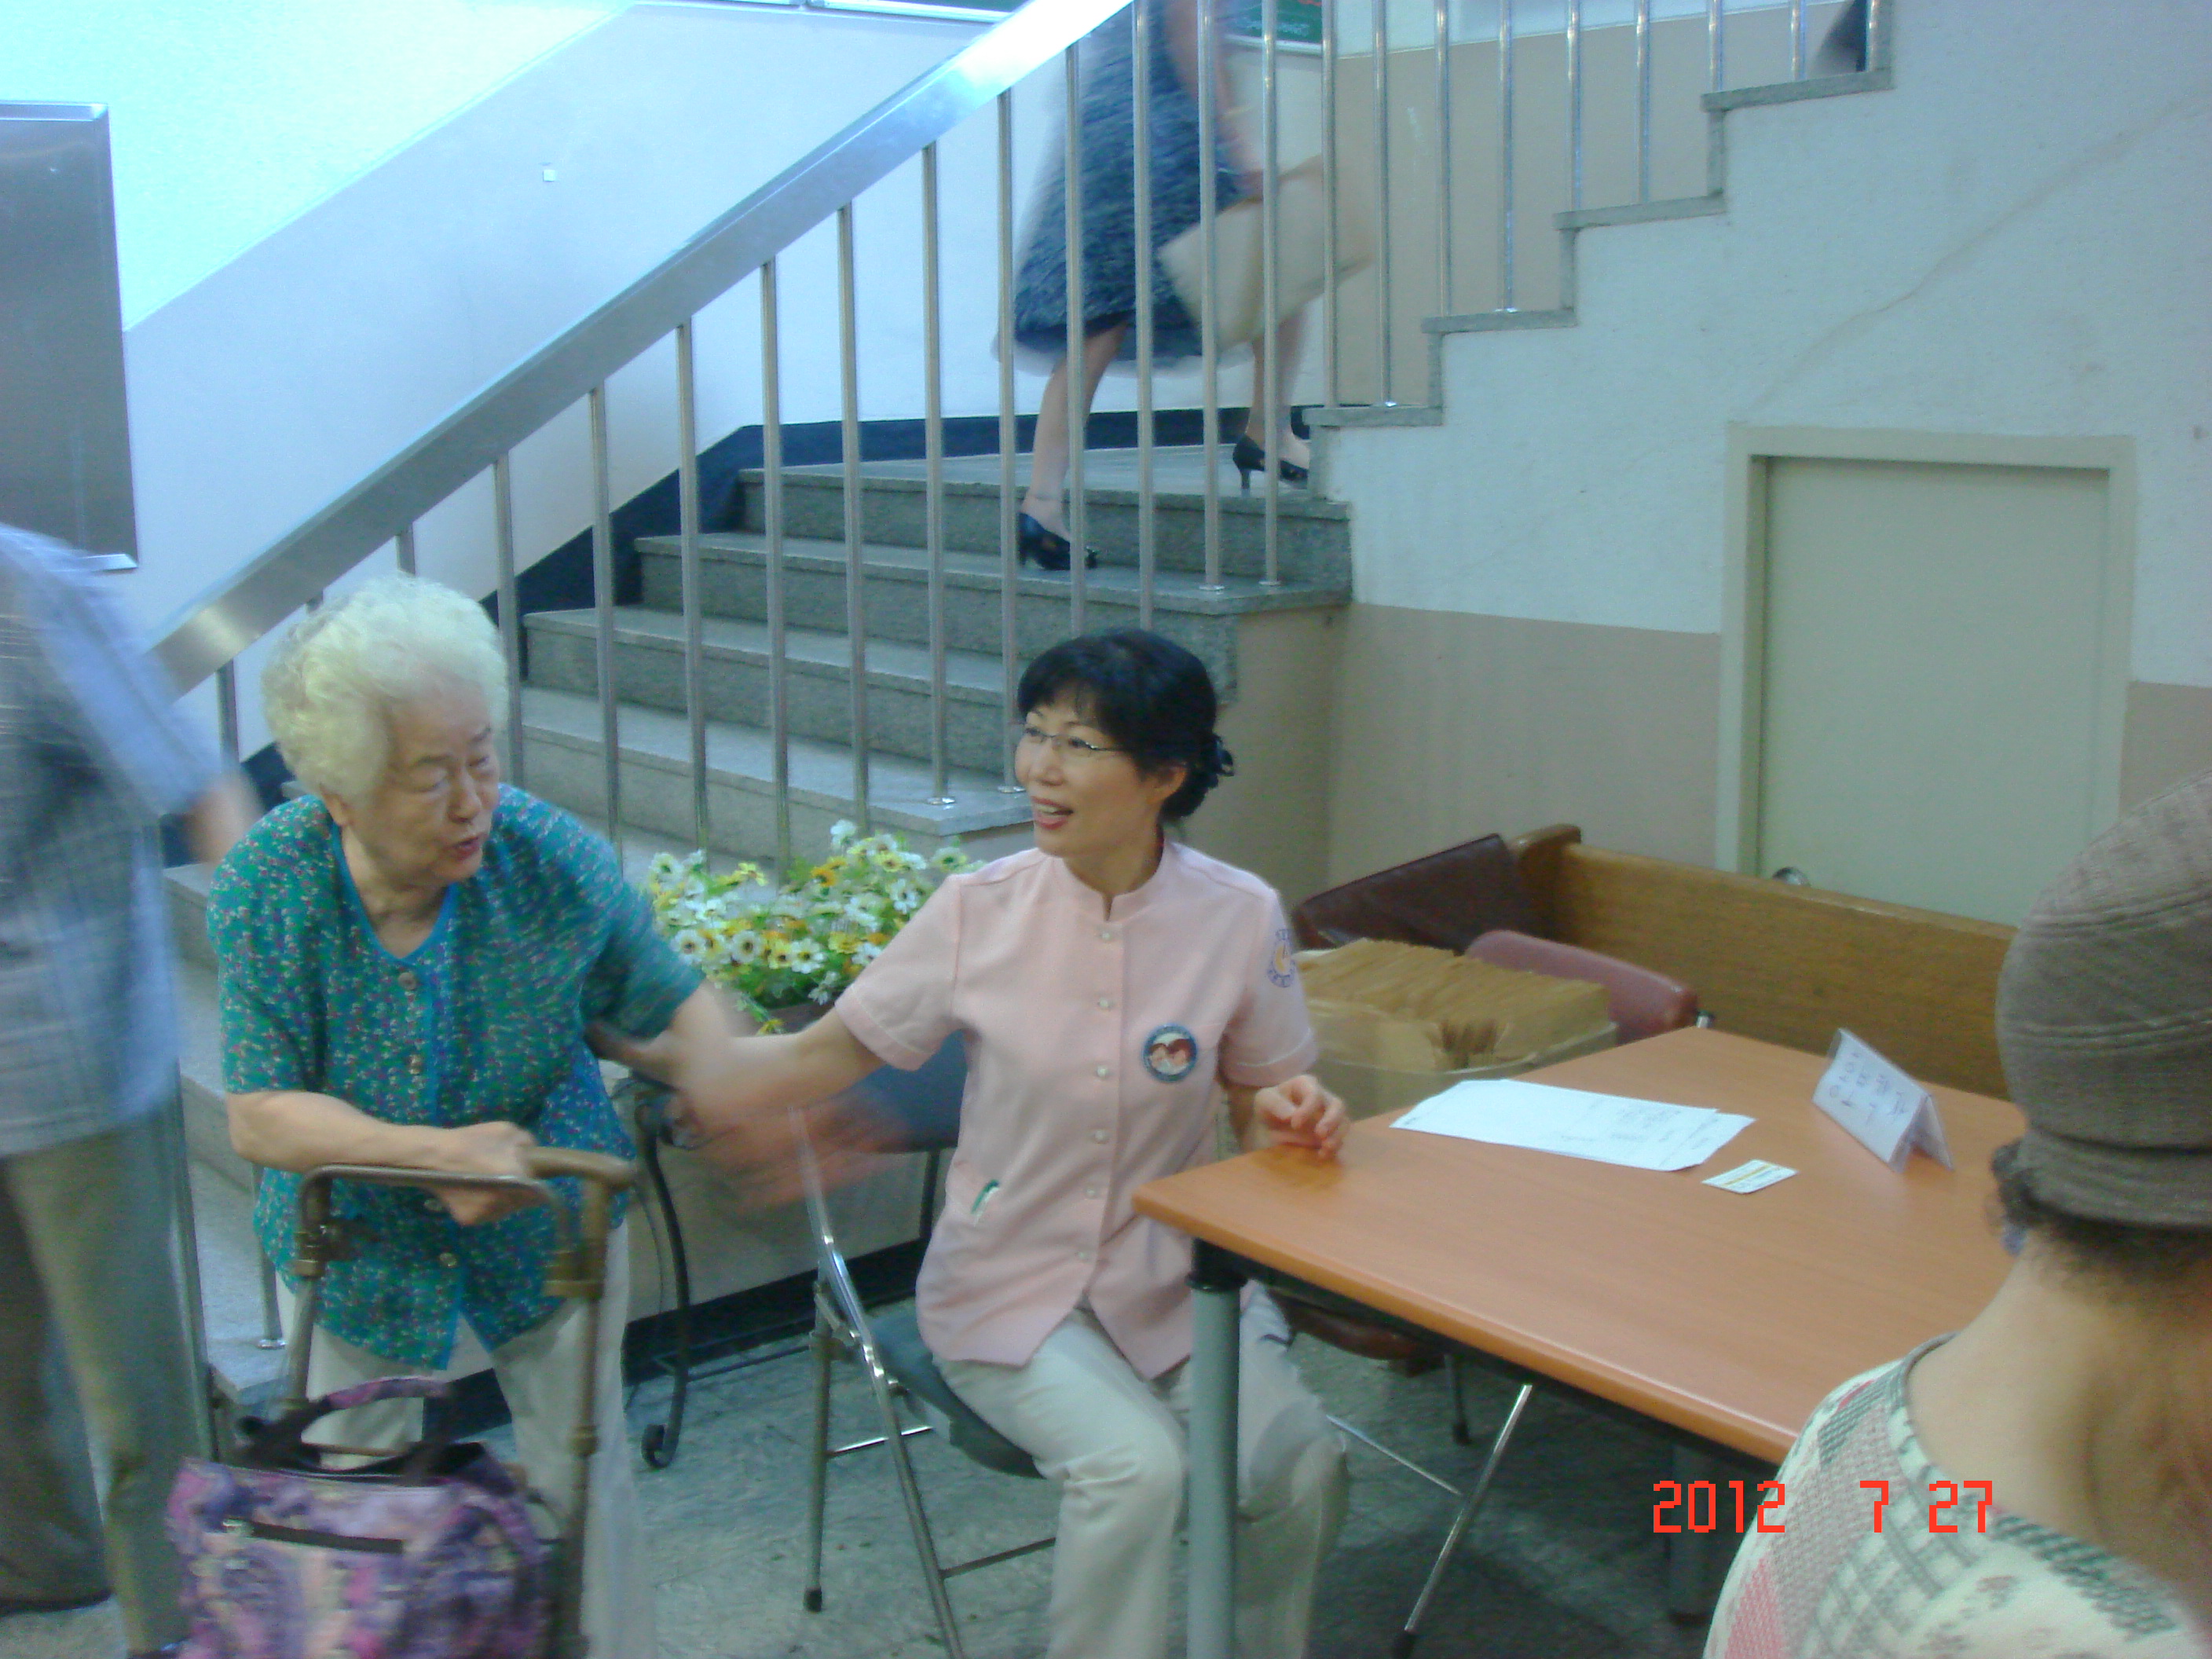 2012년 7월 27일 - 호산나교회 의료봉사 게시글의 9번째 첨부파일입니다.